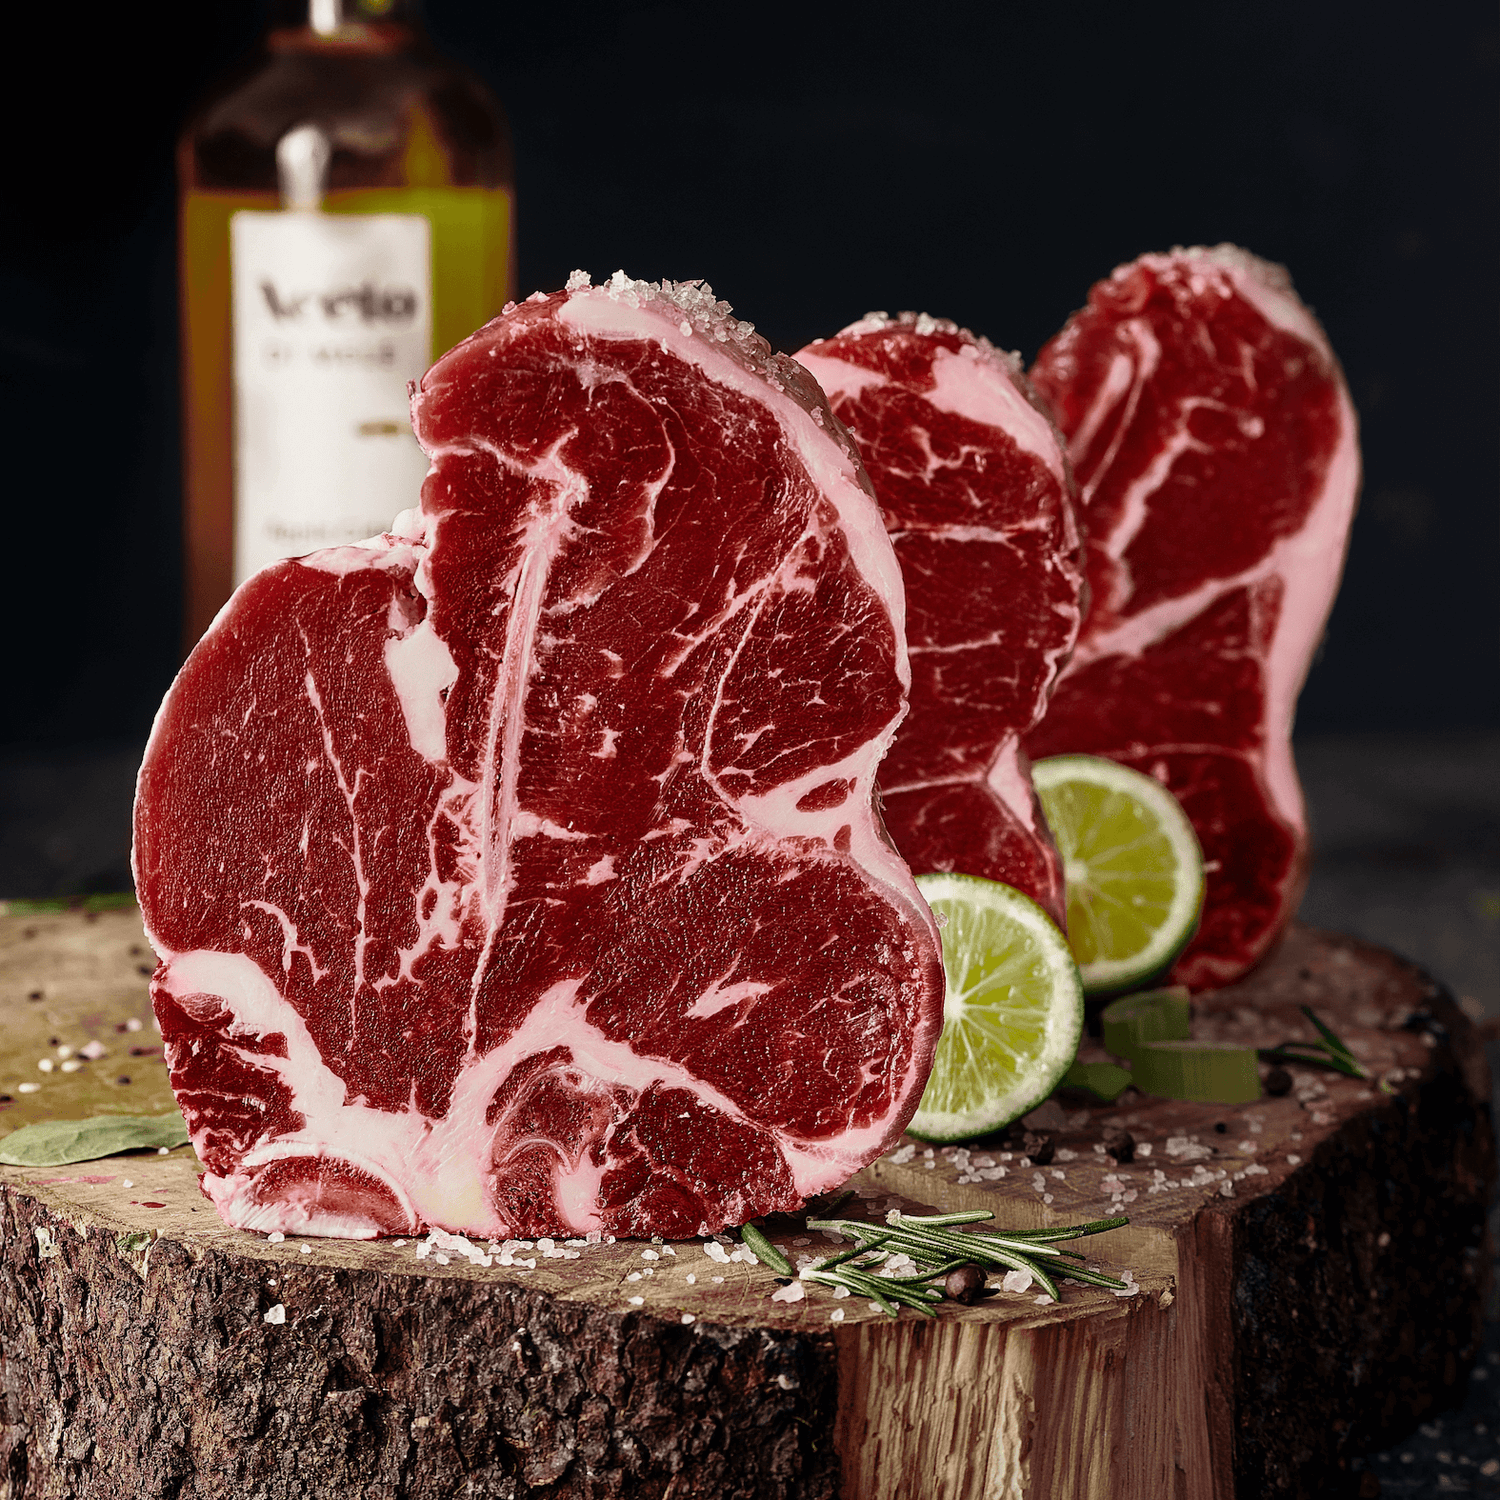 Perfekt marmoriertes Steak auf Holz